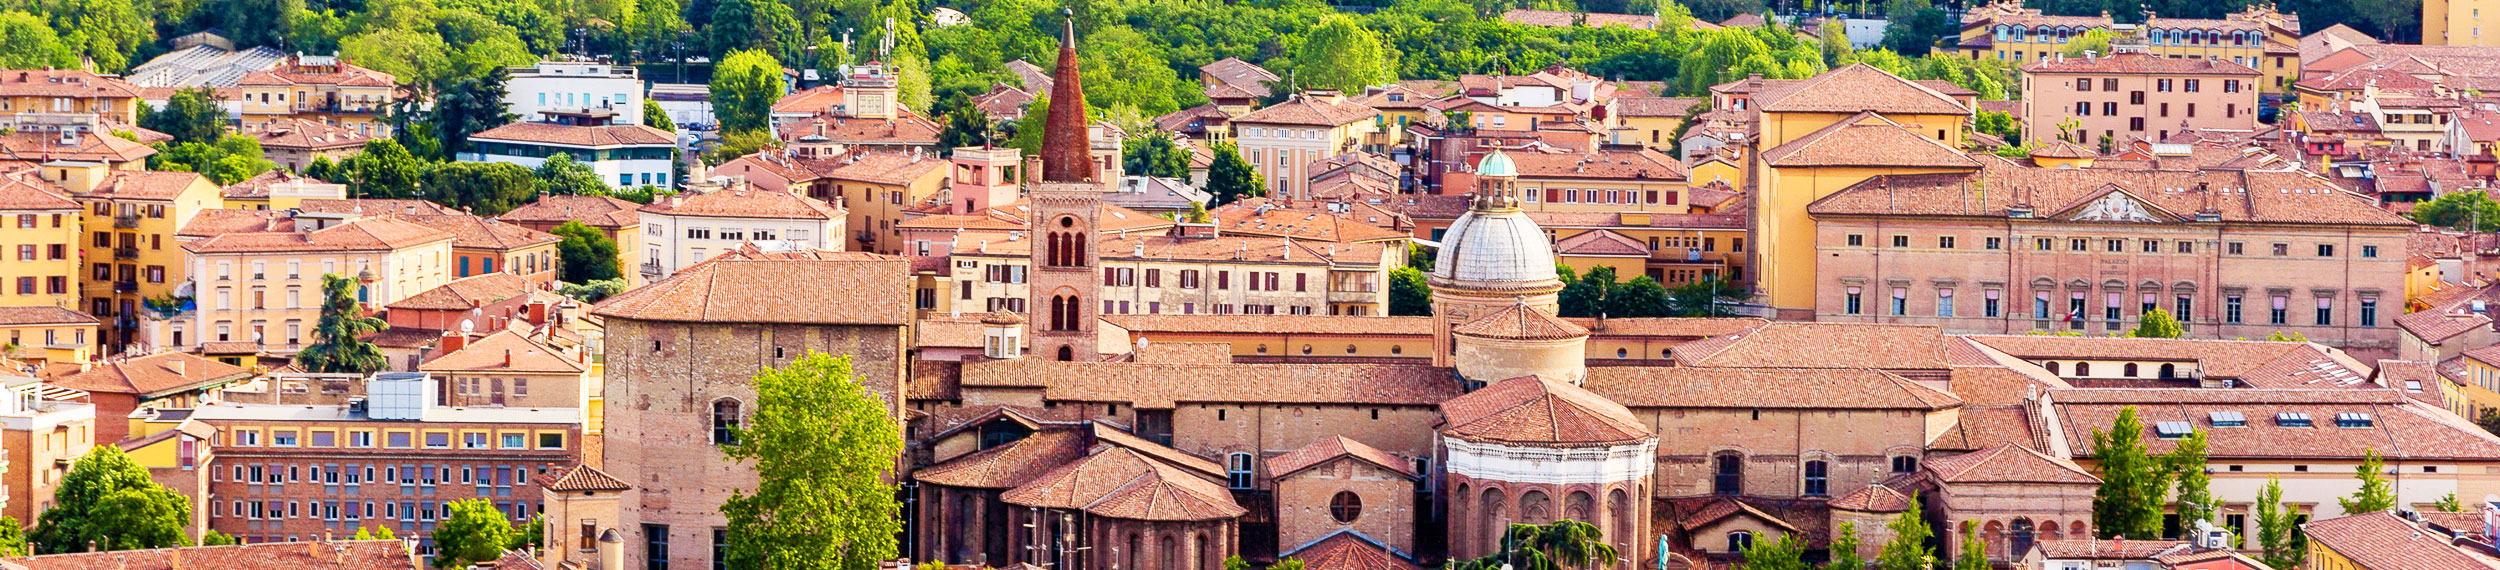 View of Basilica di San Domenico in Bologna, Italy.